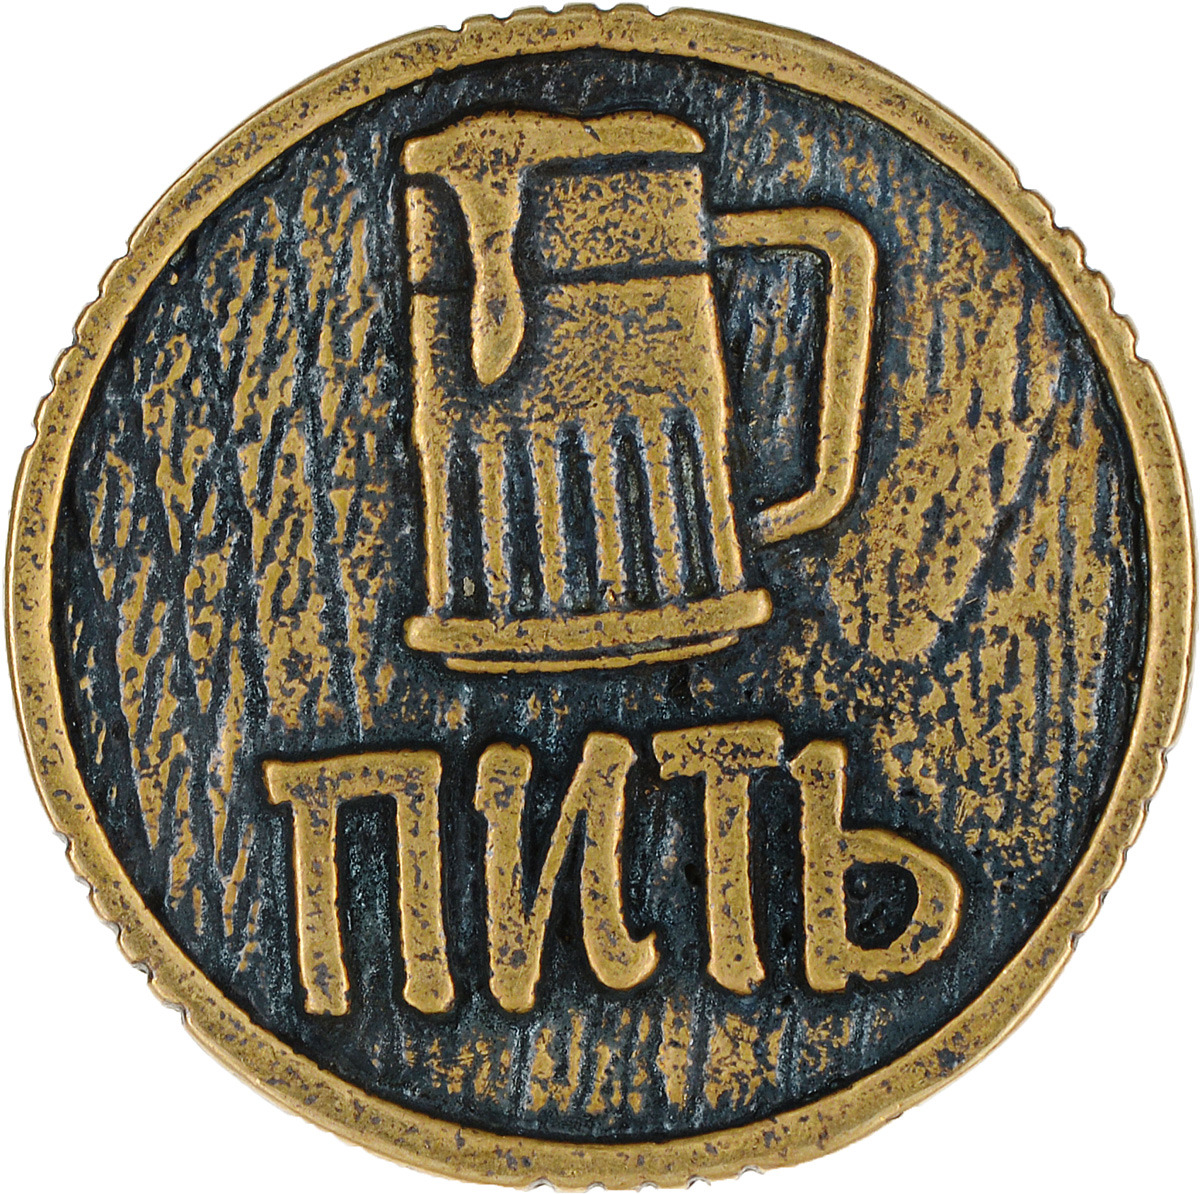 фото Денежный сувенир Miland Монета Пить-Точно пить, Т-3716, золотой